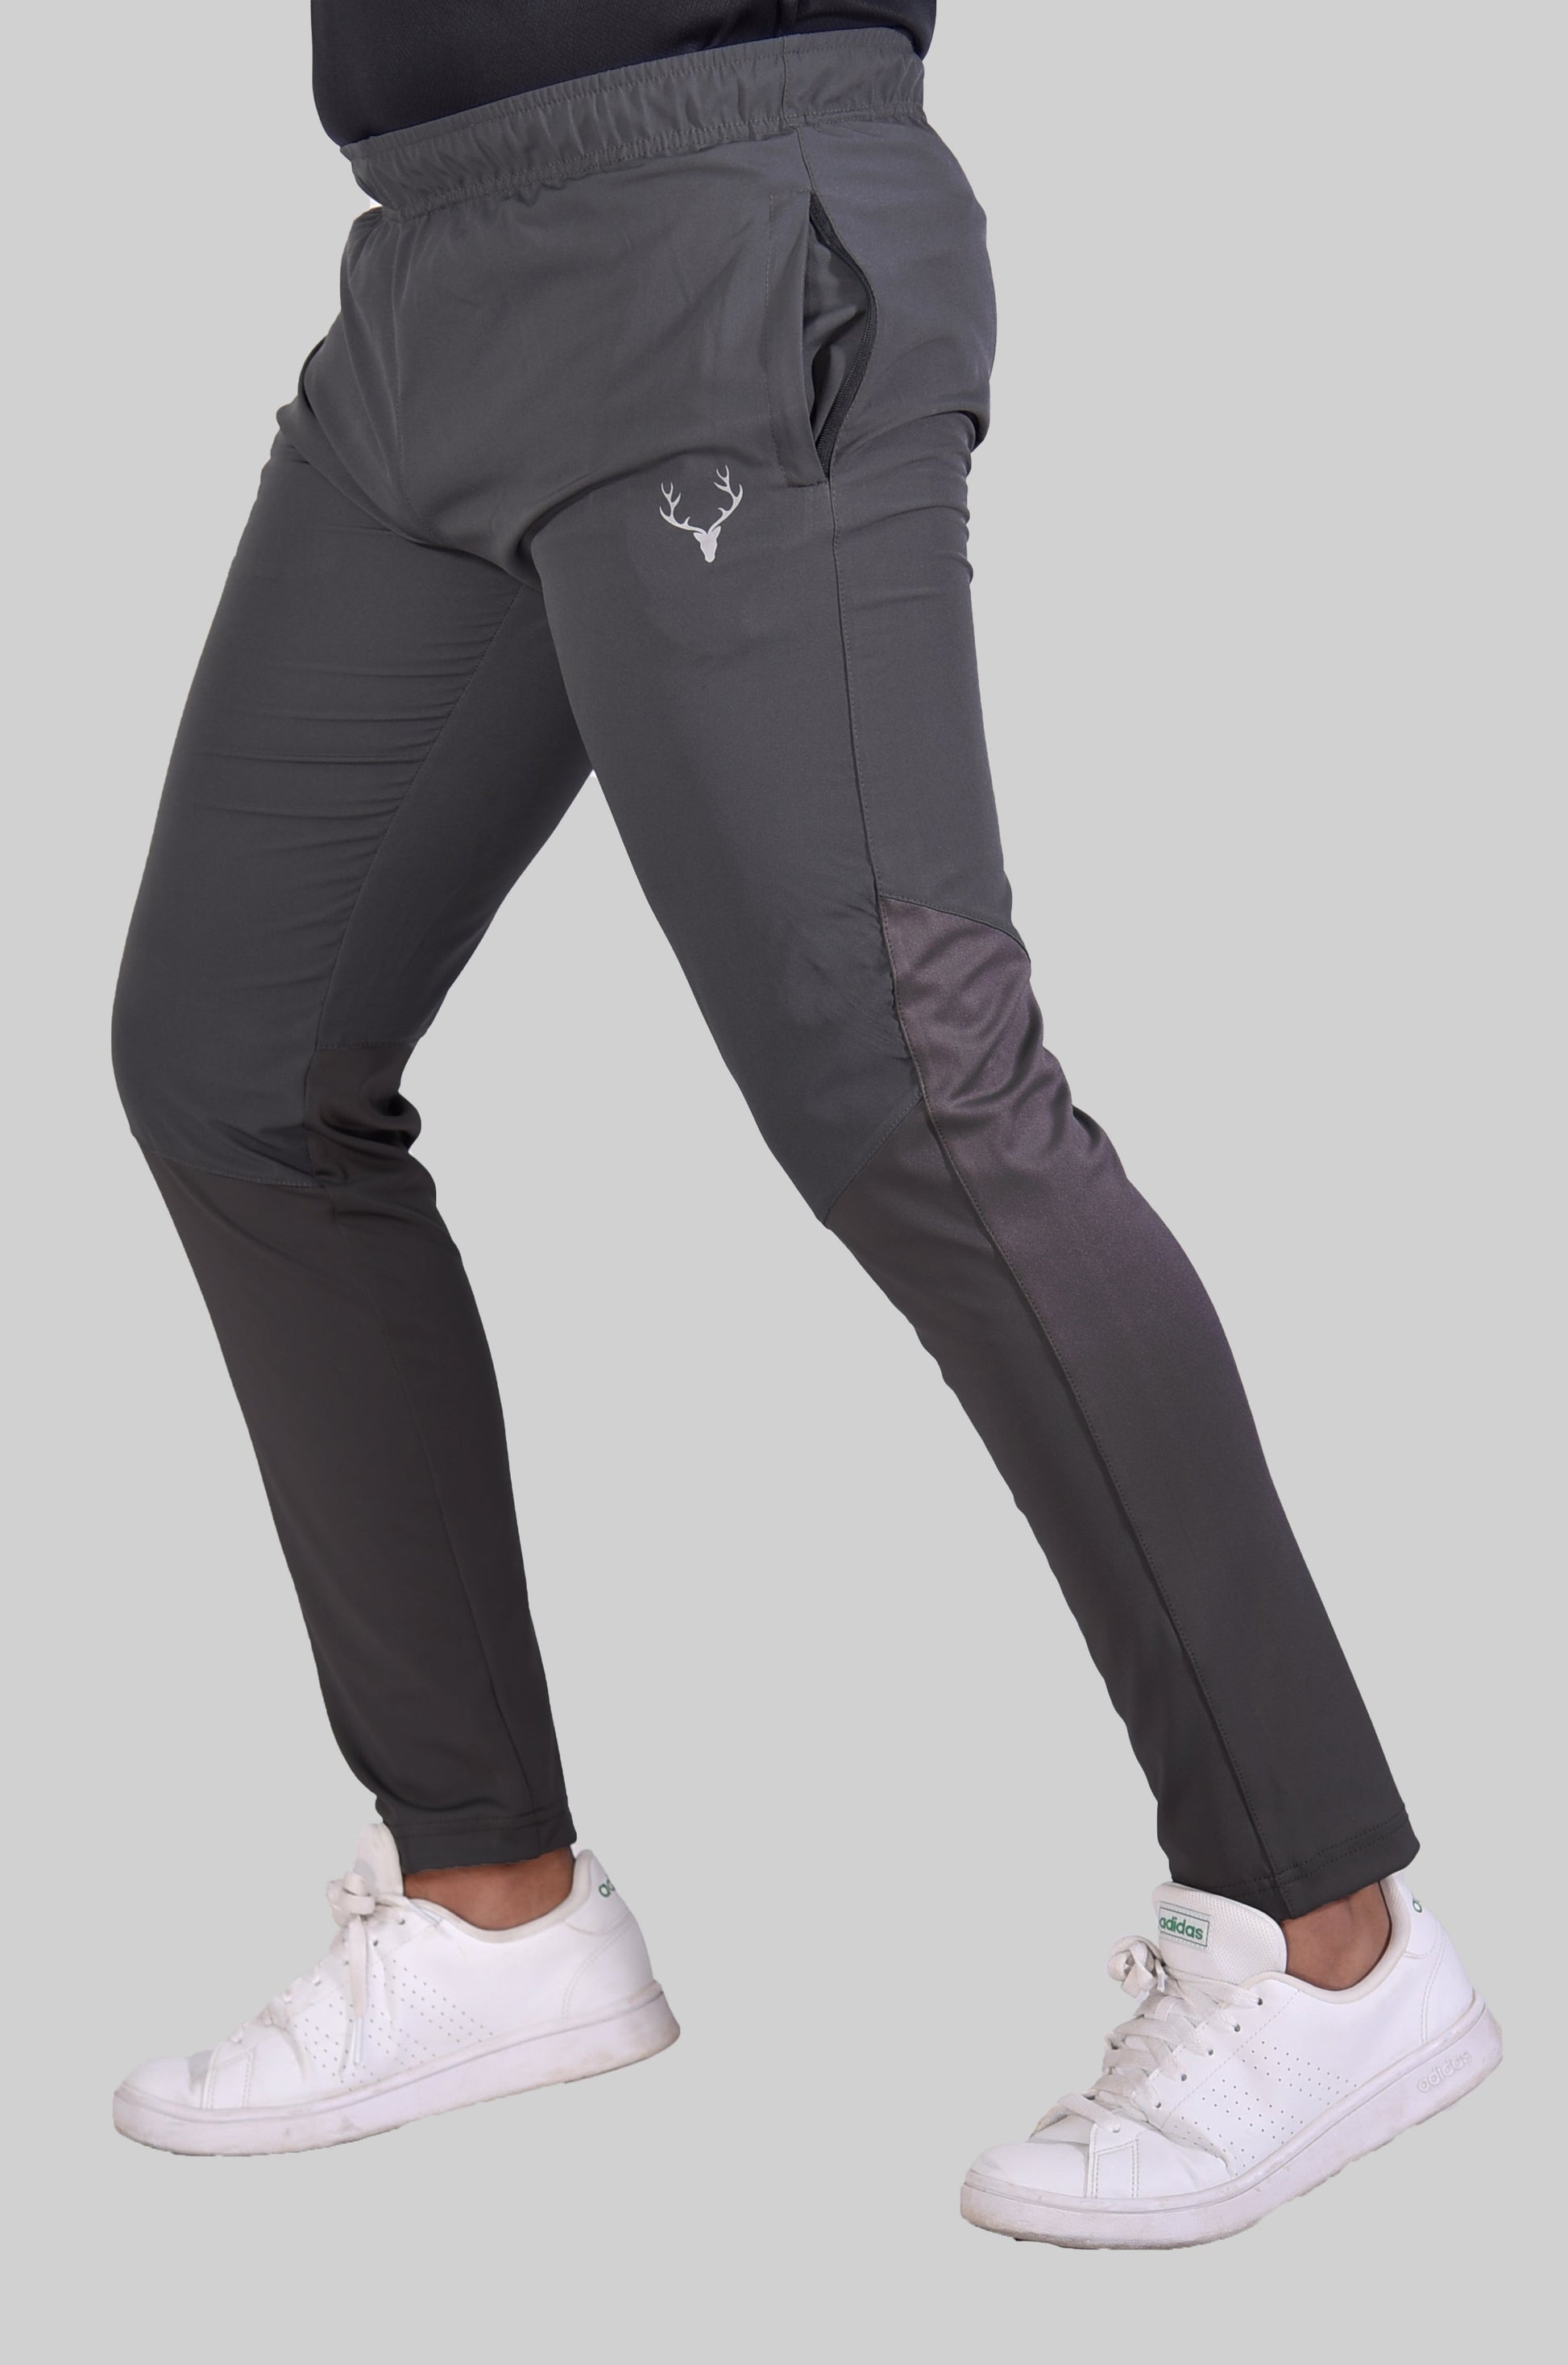 SG Hybrid Trouser 2.0 (Grey & Grey) - Stag Clothing 